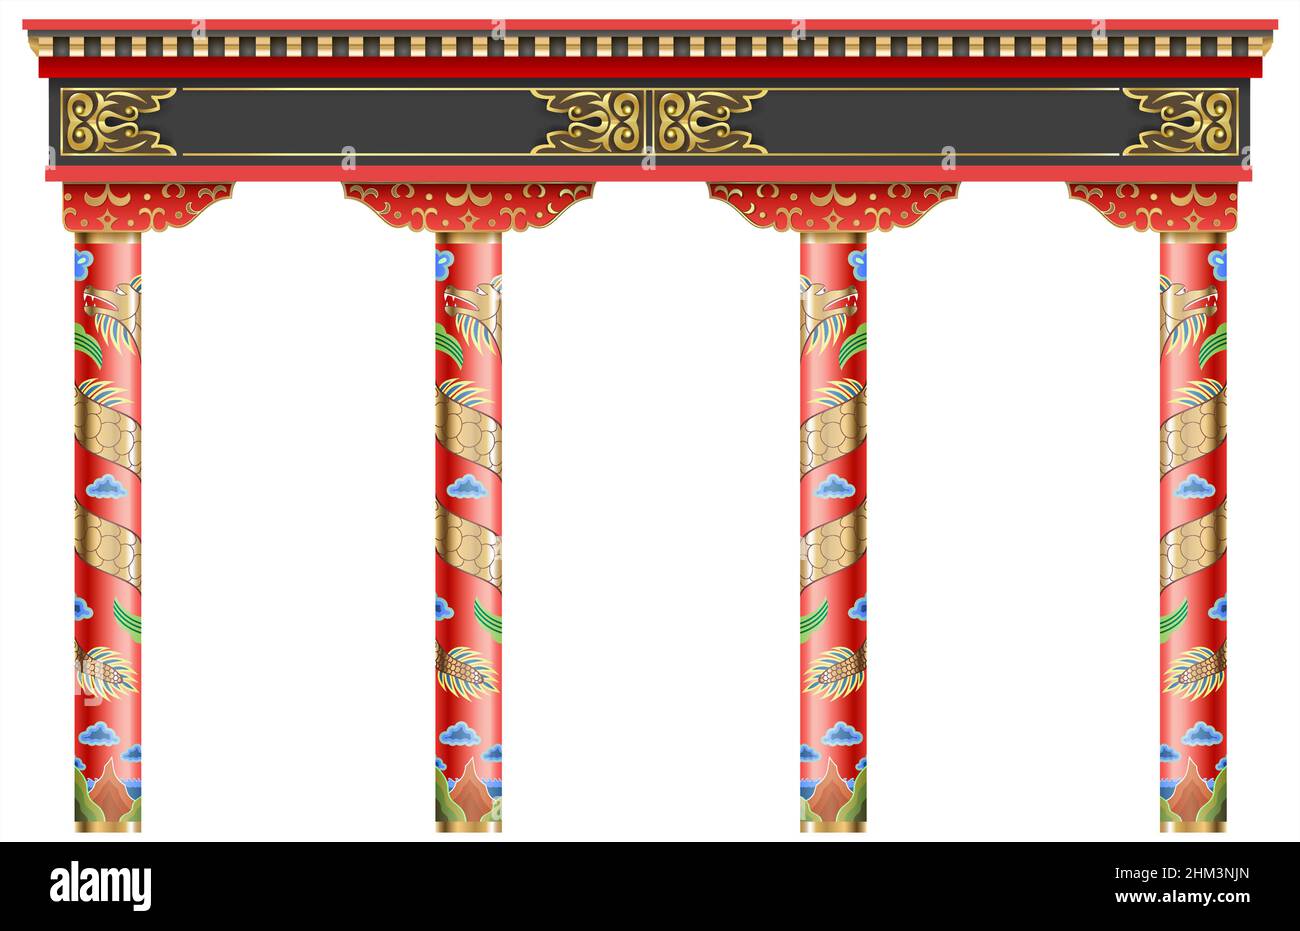 Der östliche rote chinesische Bogen. Geschnitzte Architektur und klassische Säulen. Chinesischer Stil. Dekorativer architektonischer Rahmen in Vektorgrafiken. Stock Vektor